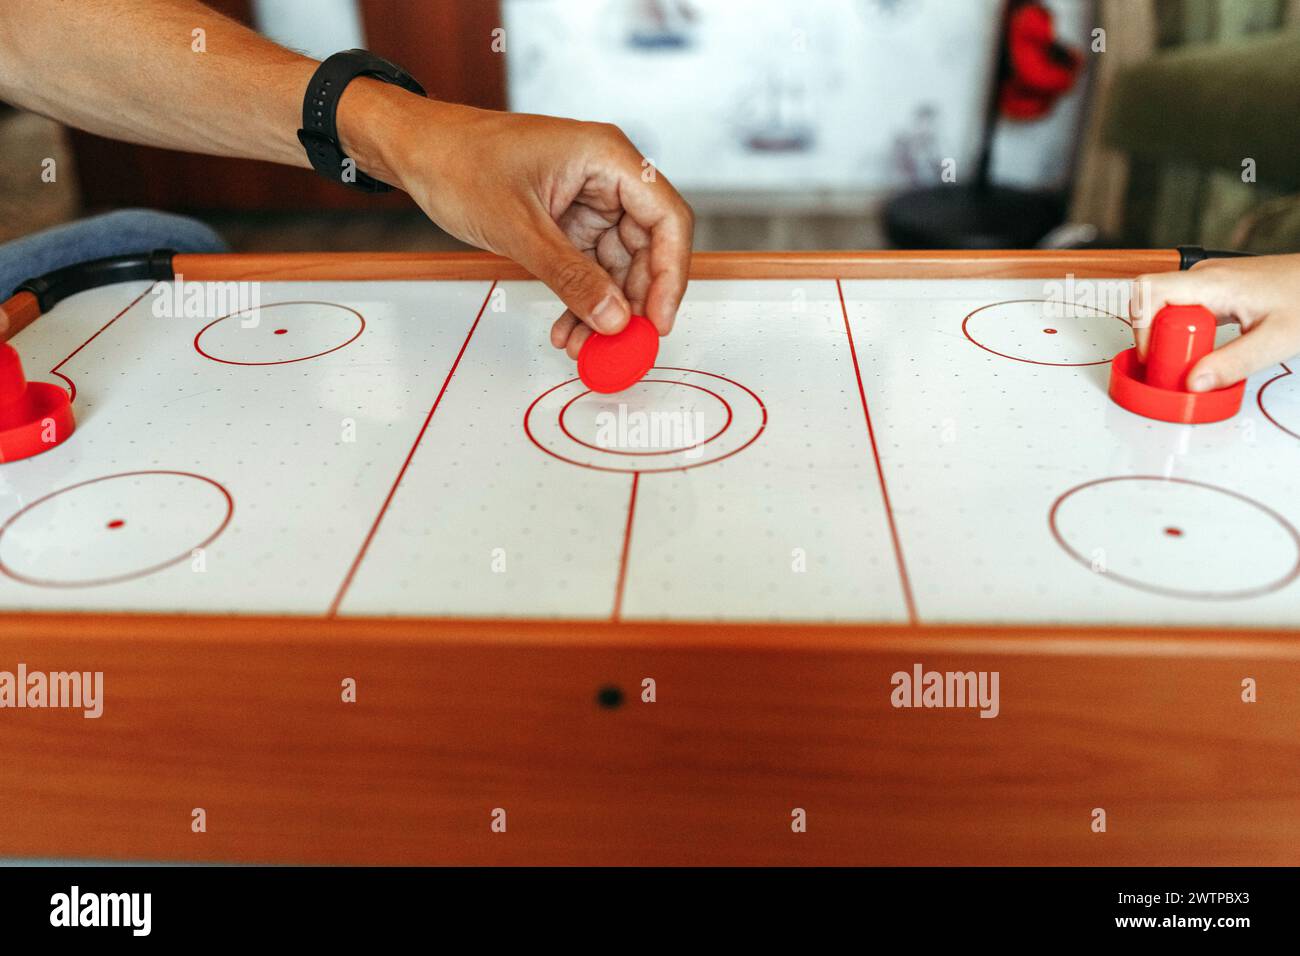 Deux individus se sont engagés dans une partie de hockey pneumatique, frappant habilement la rondelle avec des pagaies sur une surface de table lisse. Banque D'Images